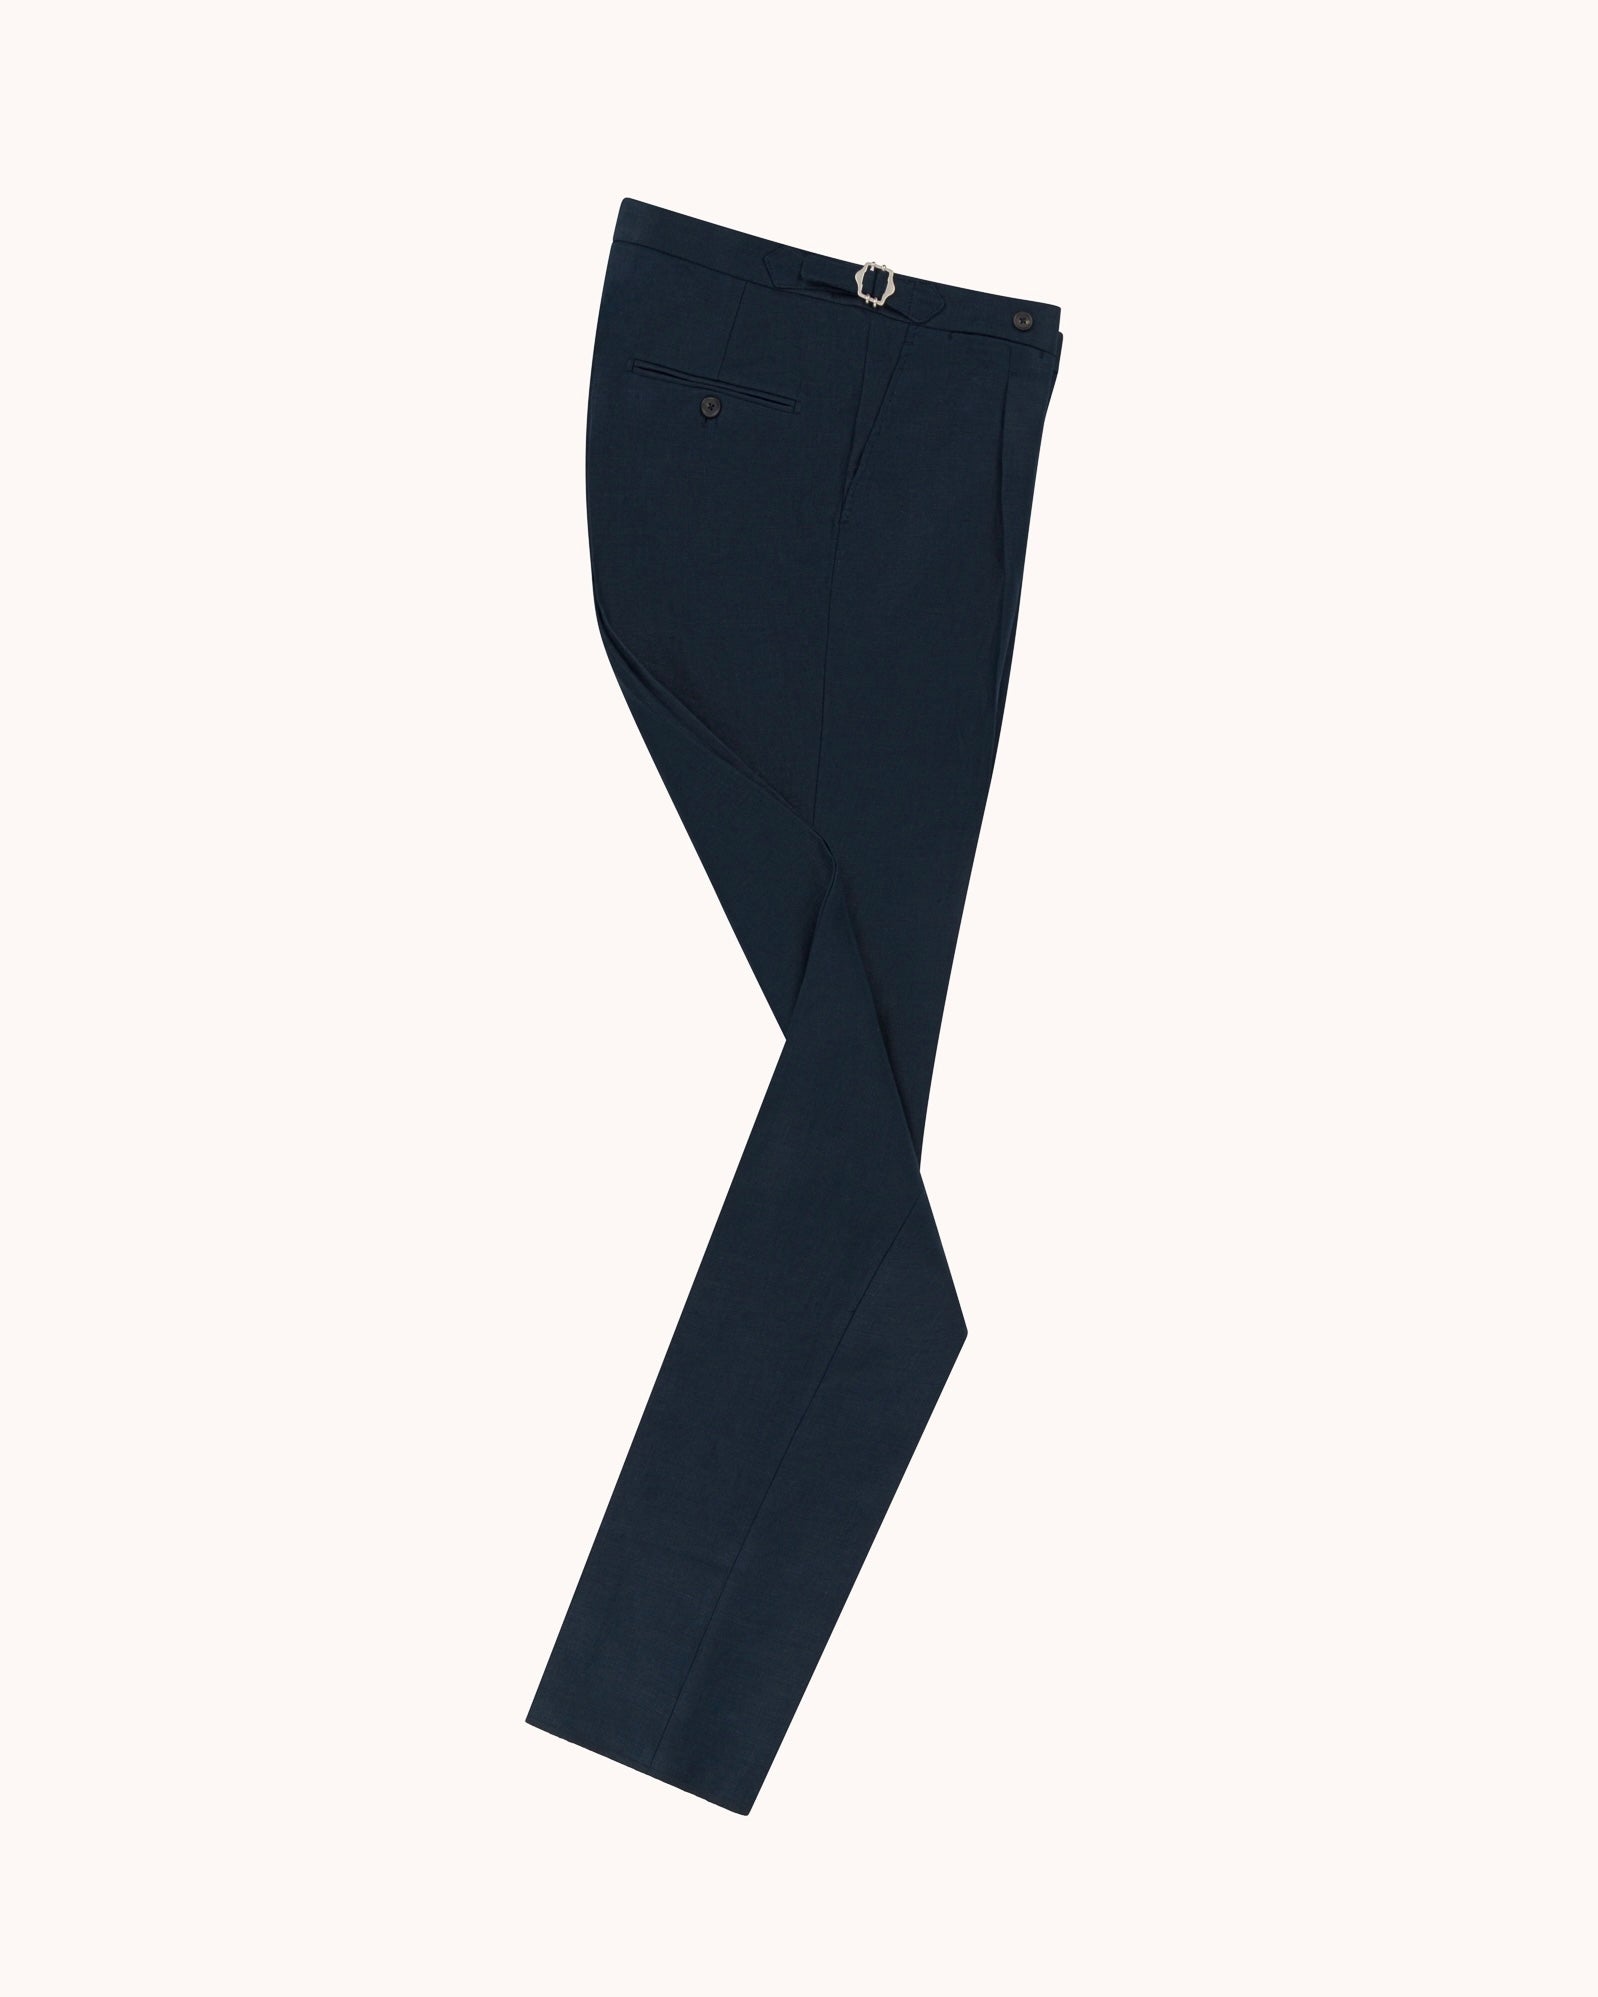 Single Pleat Trouser - Navy Linen